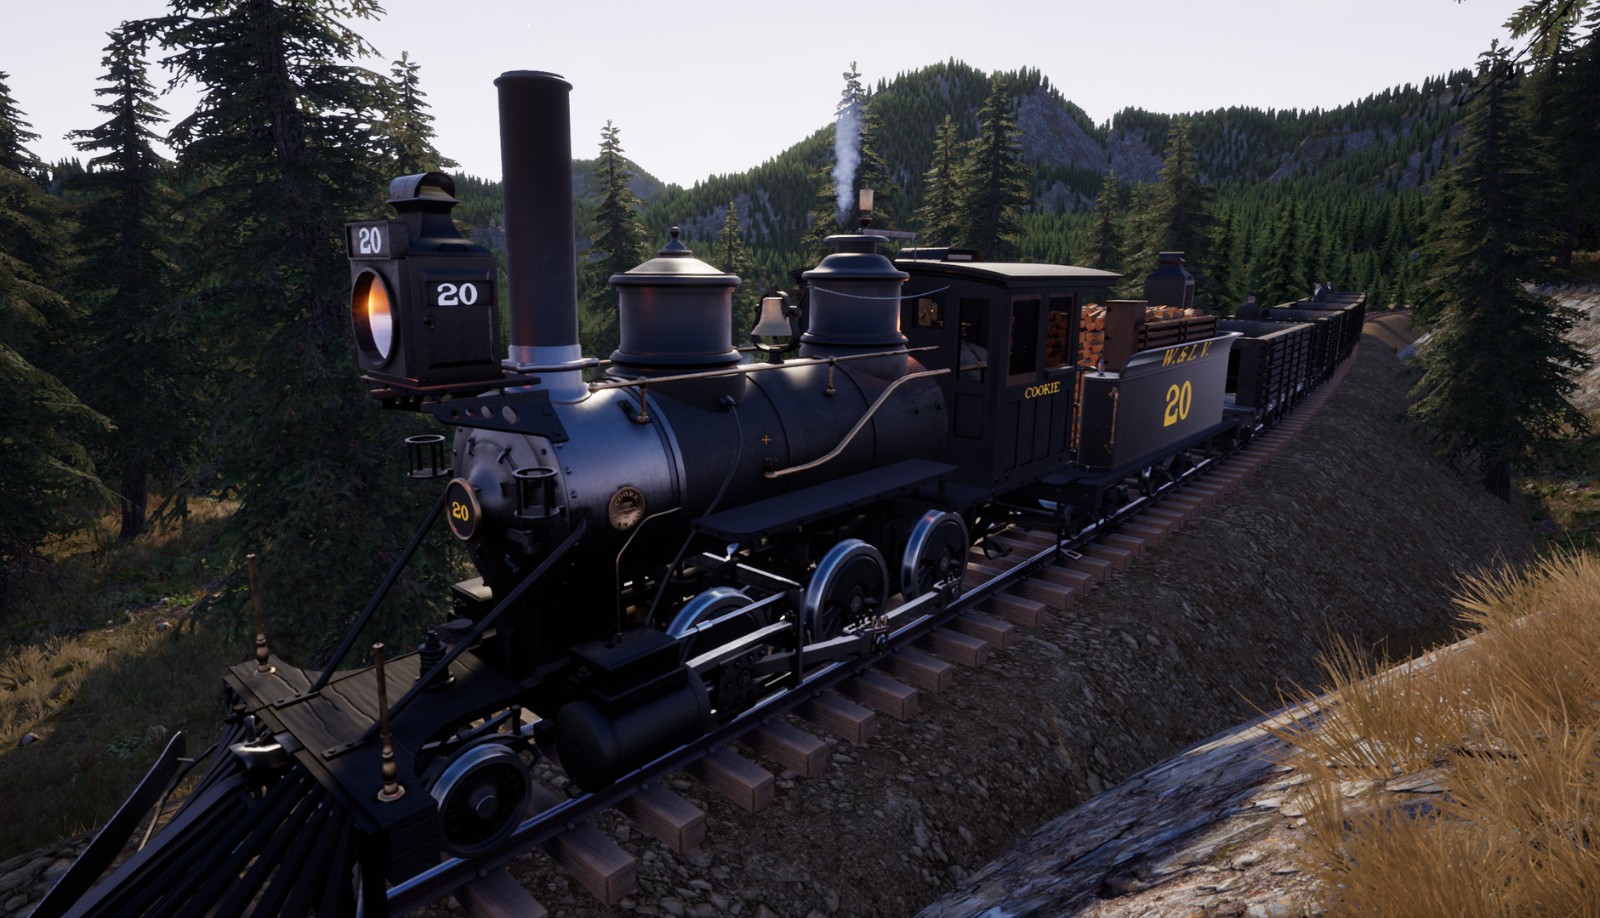 铁路模拟游戏《铁路在线》10月2日登陆Steam抢先体验